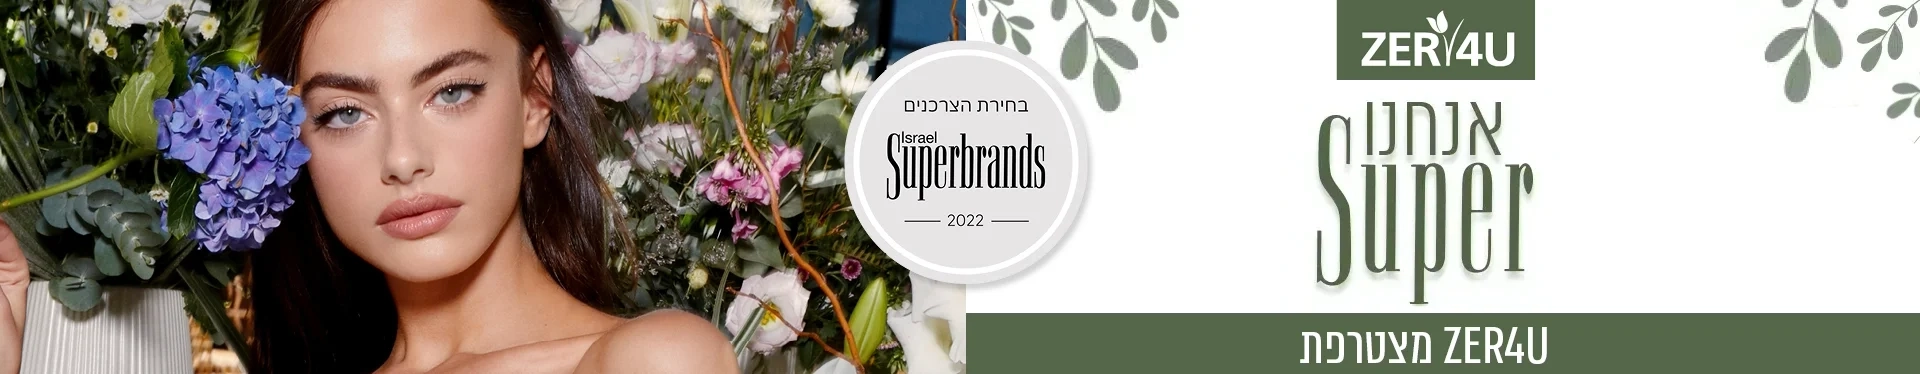 בחירת הצרכנים 2022 : ZER4U Israel is Superbrand